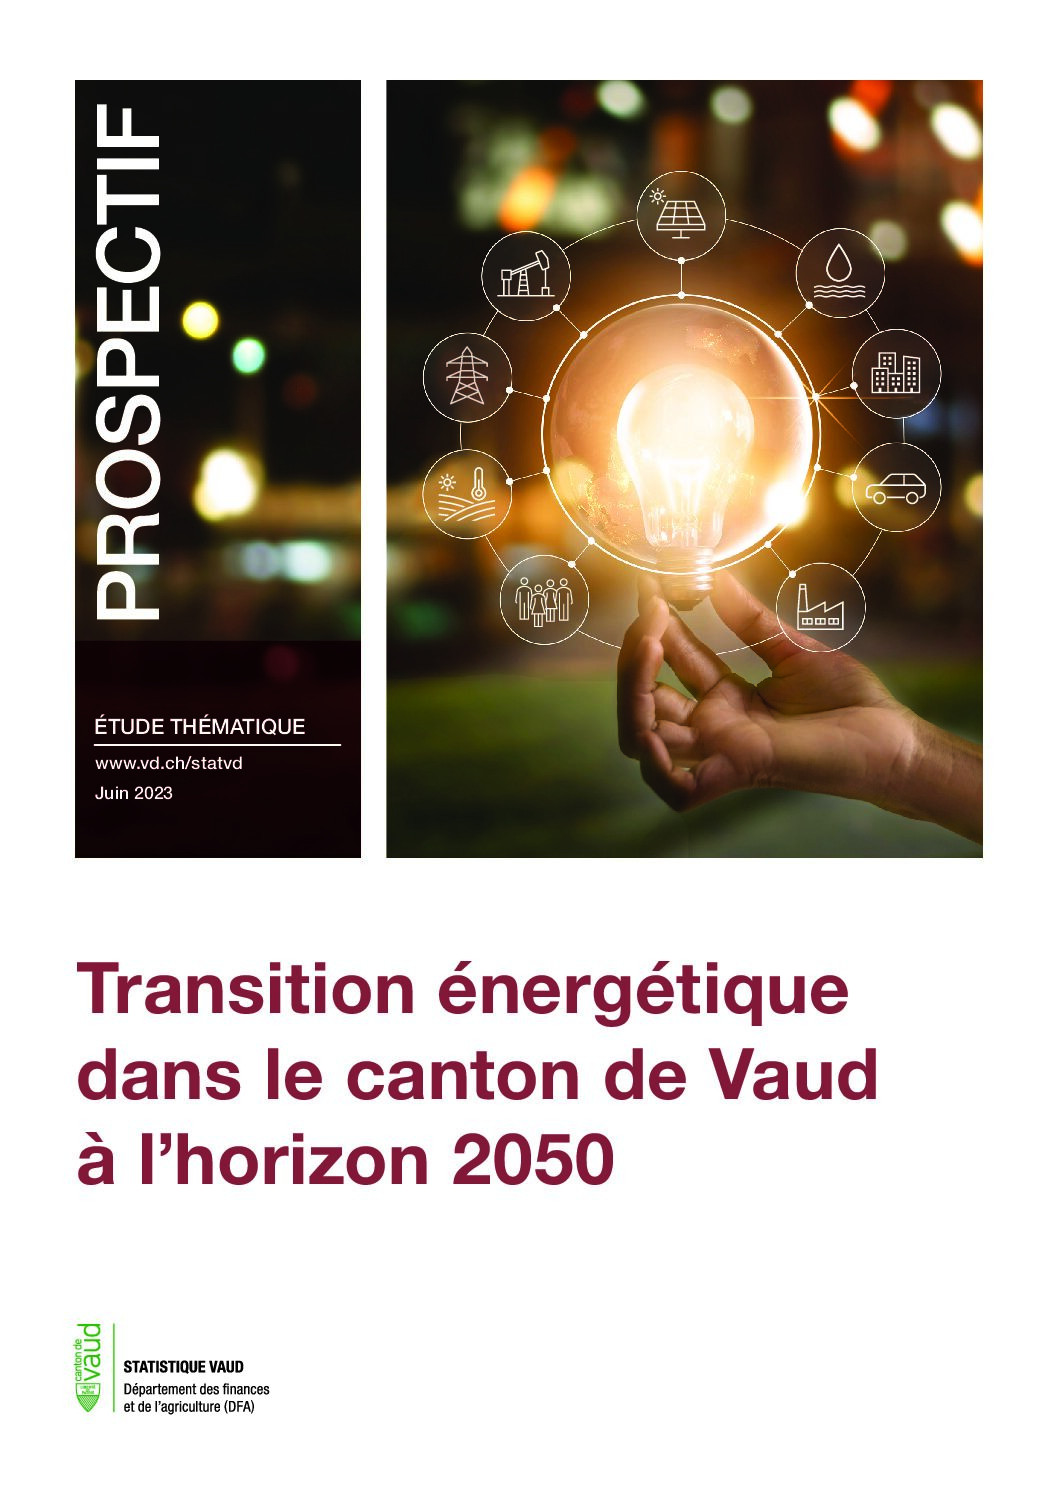 Transition énergétique dans le canton de Vaud à l’horizon 2050